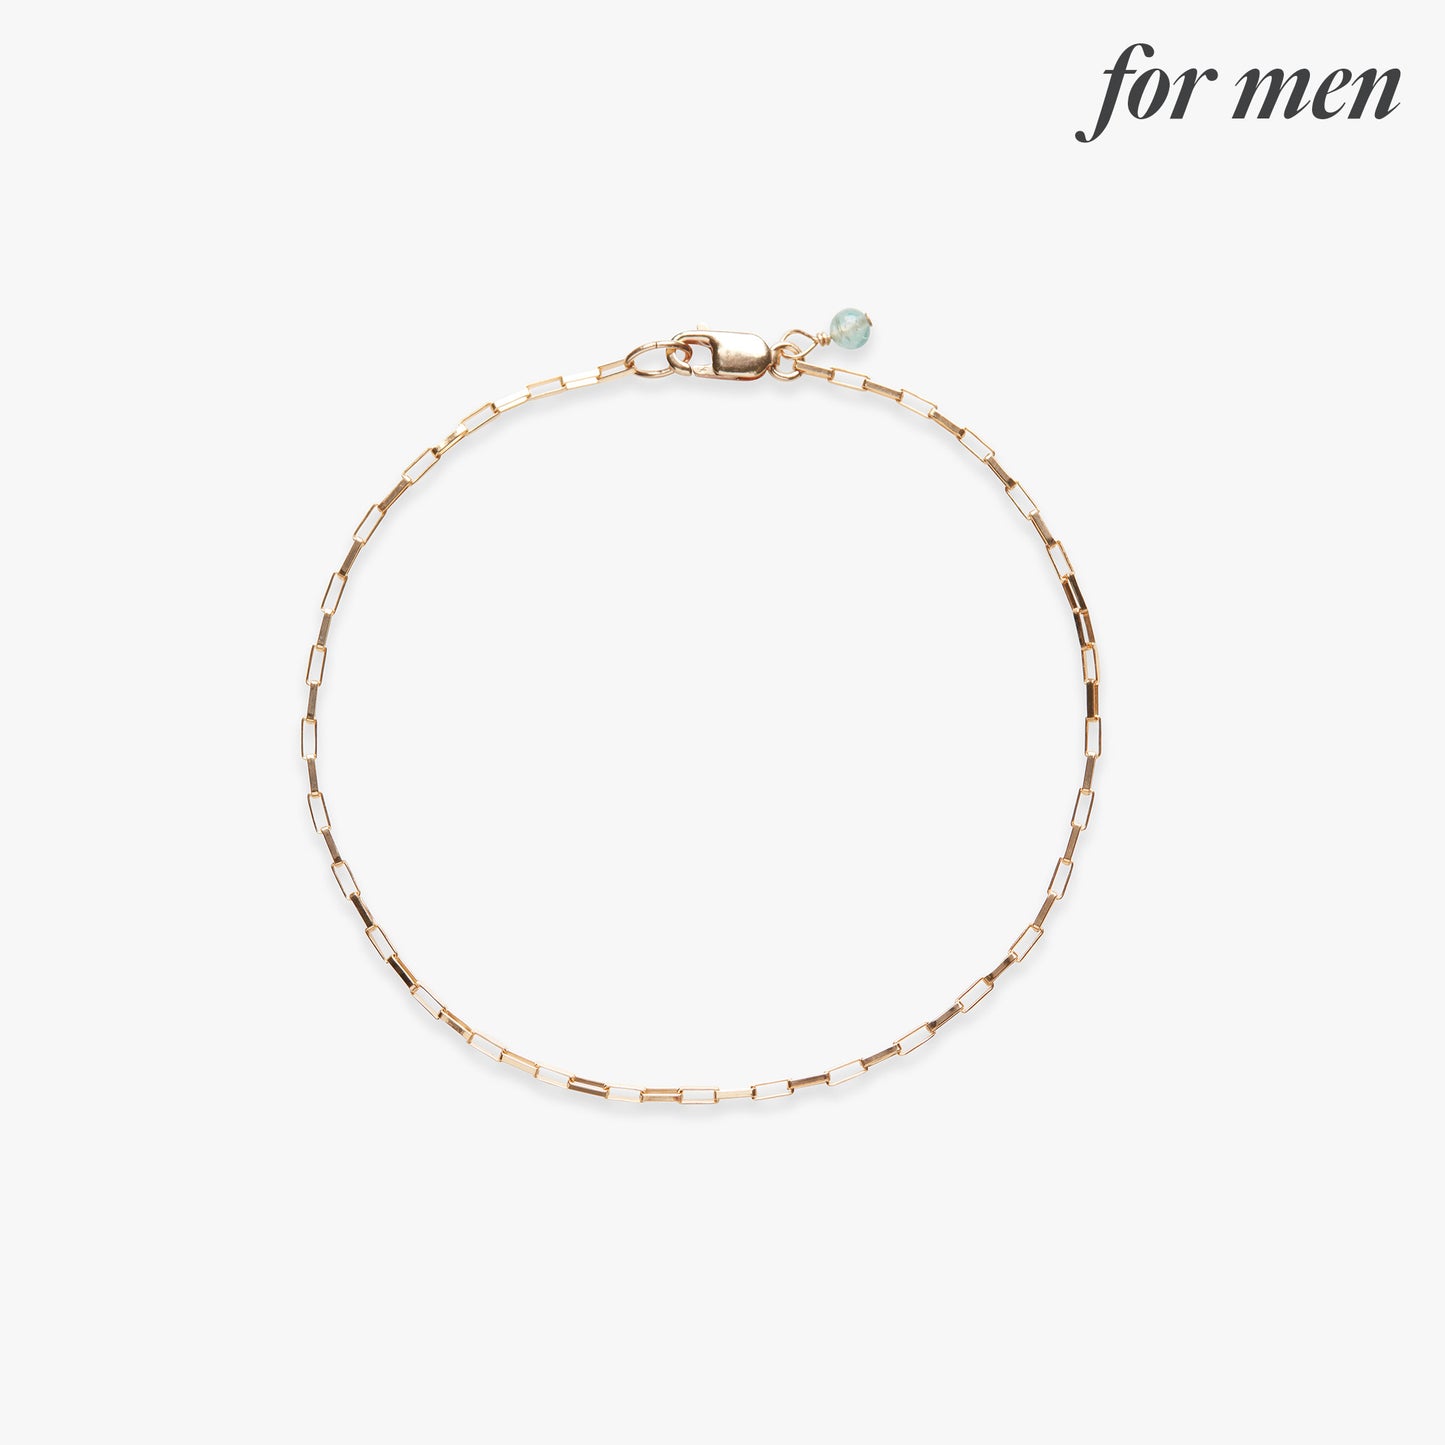 Box chain bracelet gold filled for men